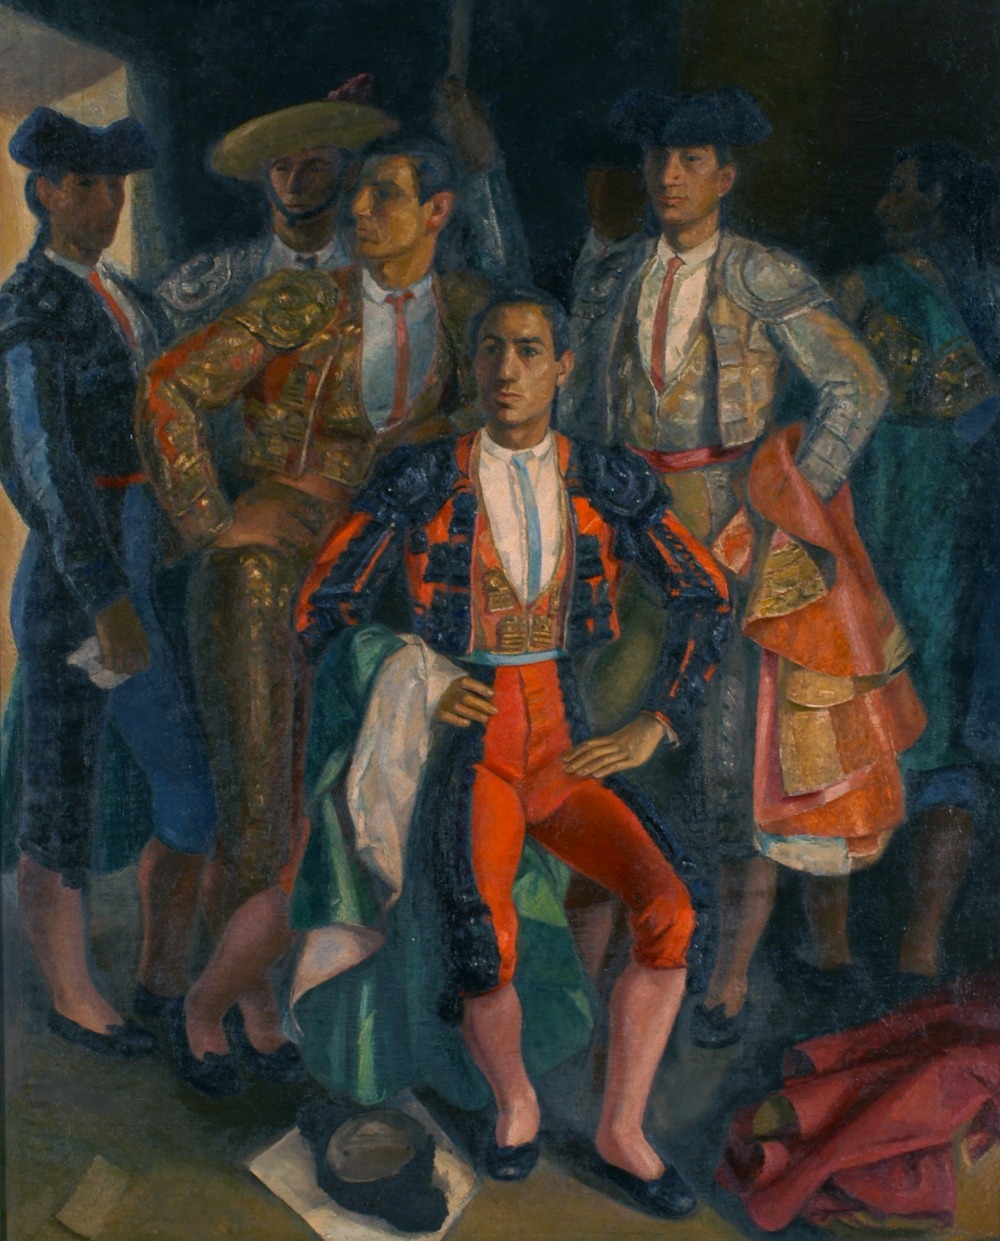 “La cuadrilla de Juan Centeno”(1953), Daniel Vázquez Díaz, (Nerva, Huelva,